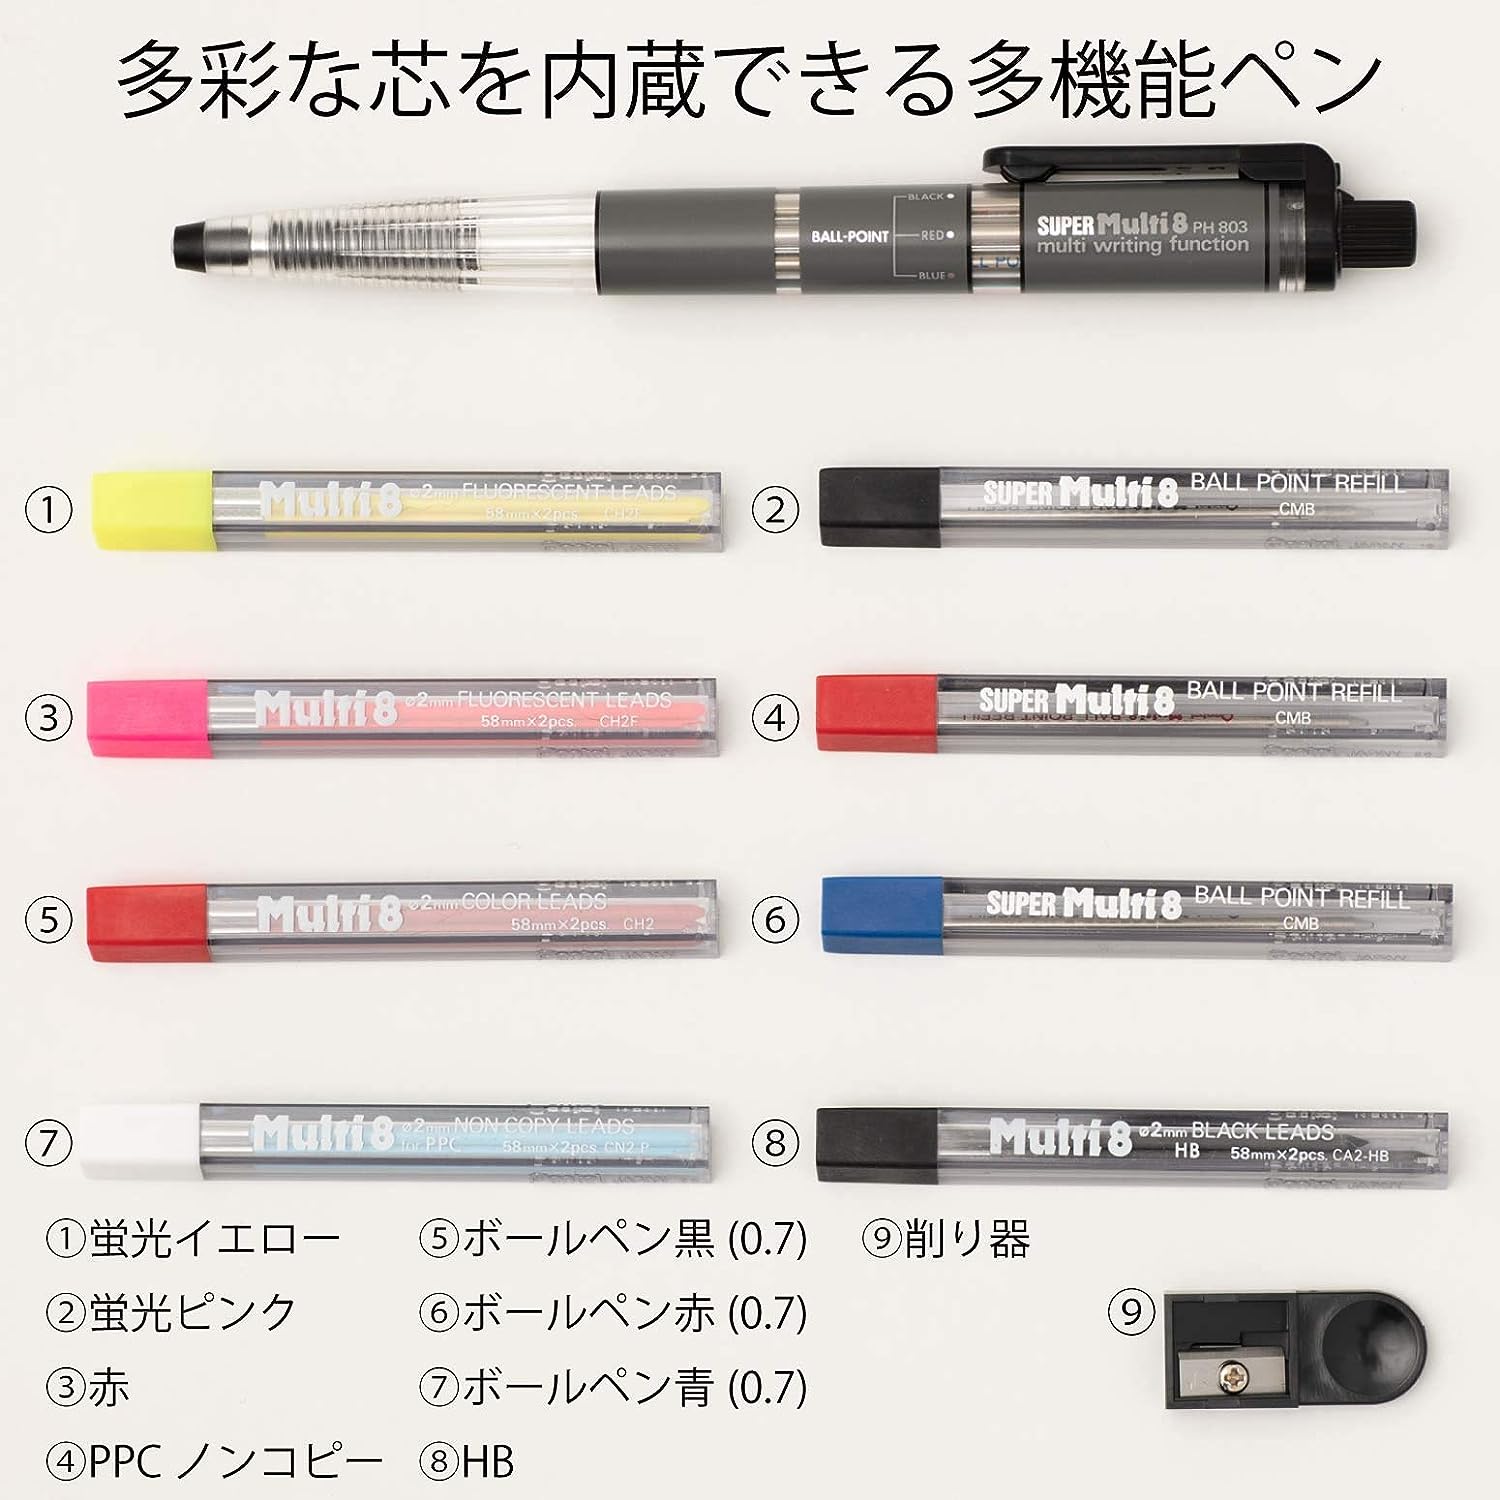 Pentel Super Multi 8 Automatic Mechanical Pencil Set (PH803ST)